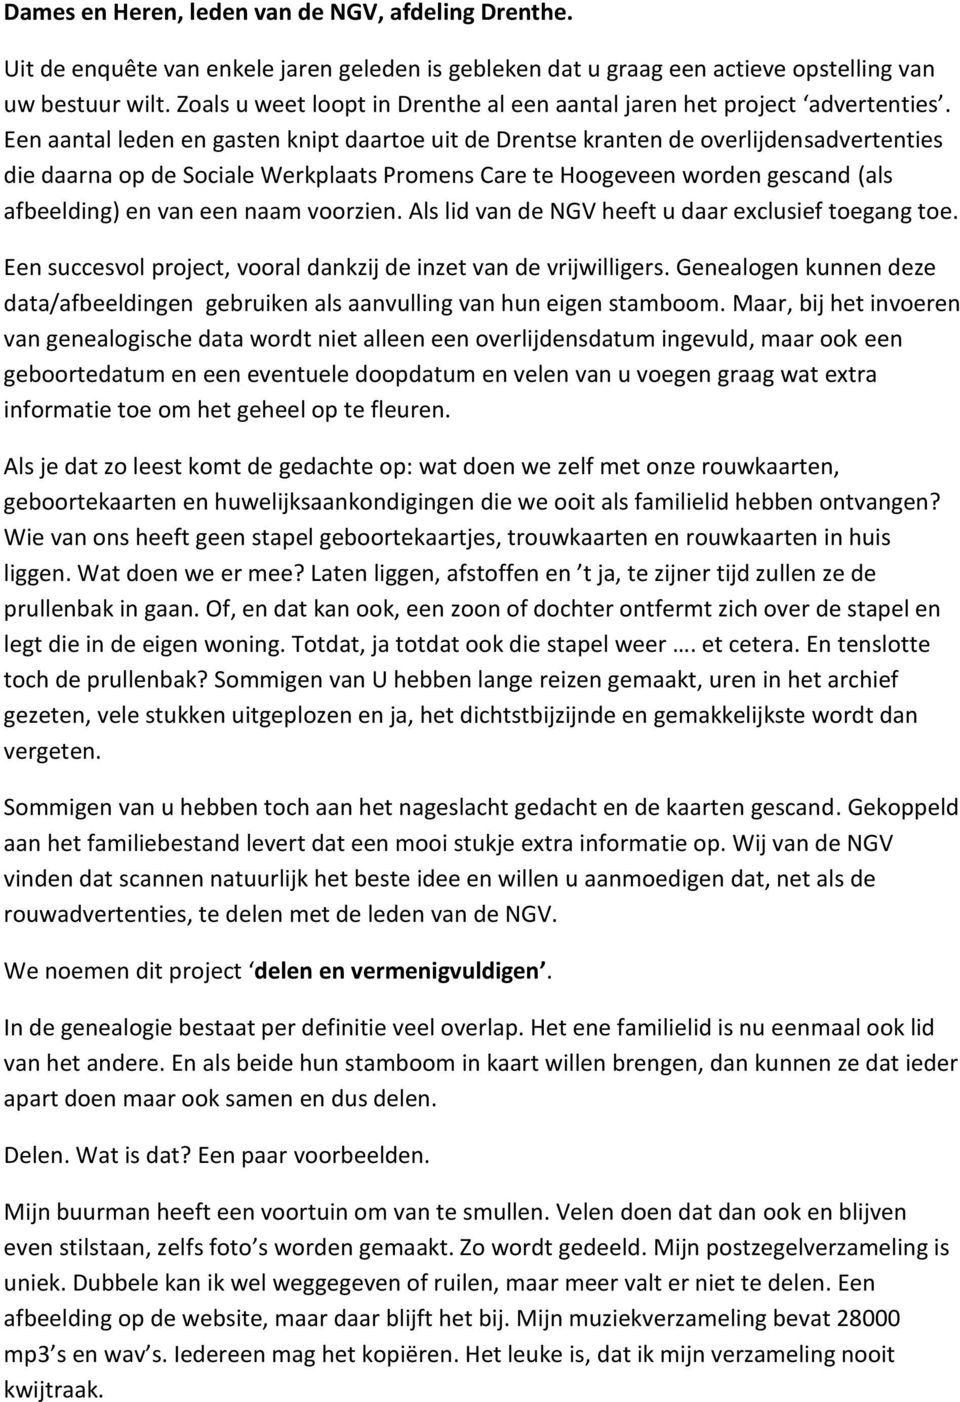 Een aantal leden en gasten knipt daartoe uit de Drentse kranten de overlijdensadvertenties die daarna op de Sociale Werkplaats Promens Care te Hoogeveen worden gescand (als afbeelding) en van een